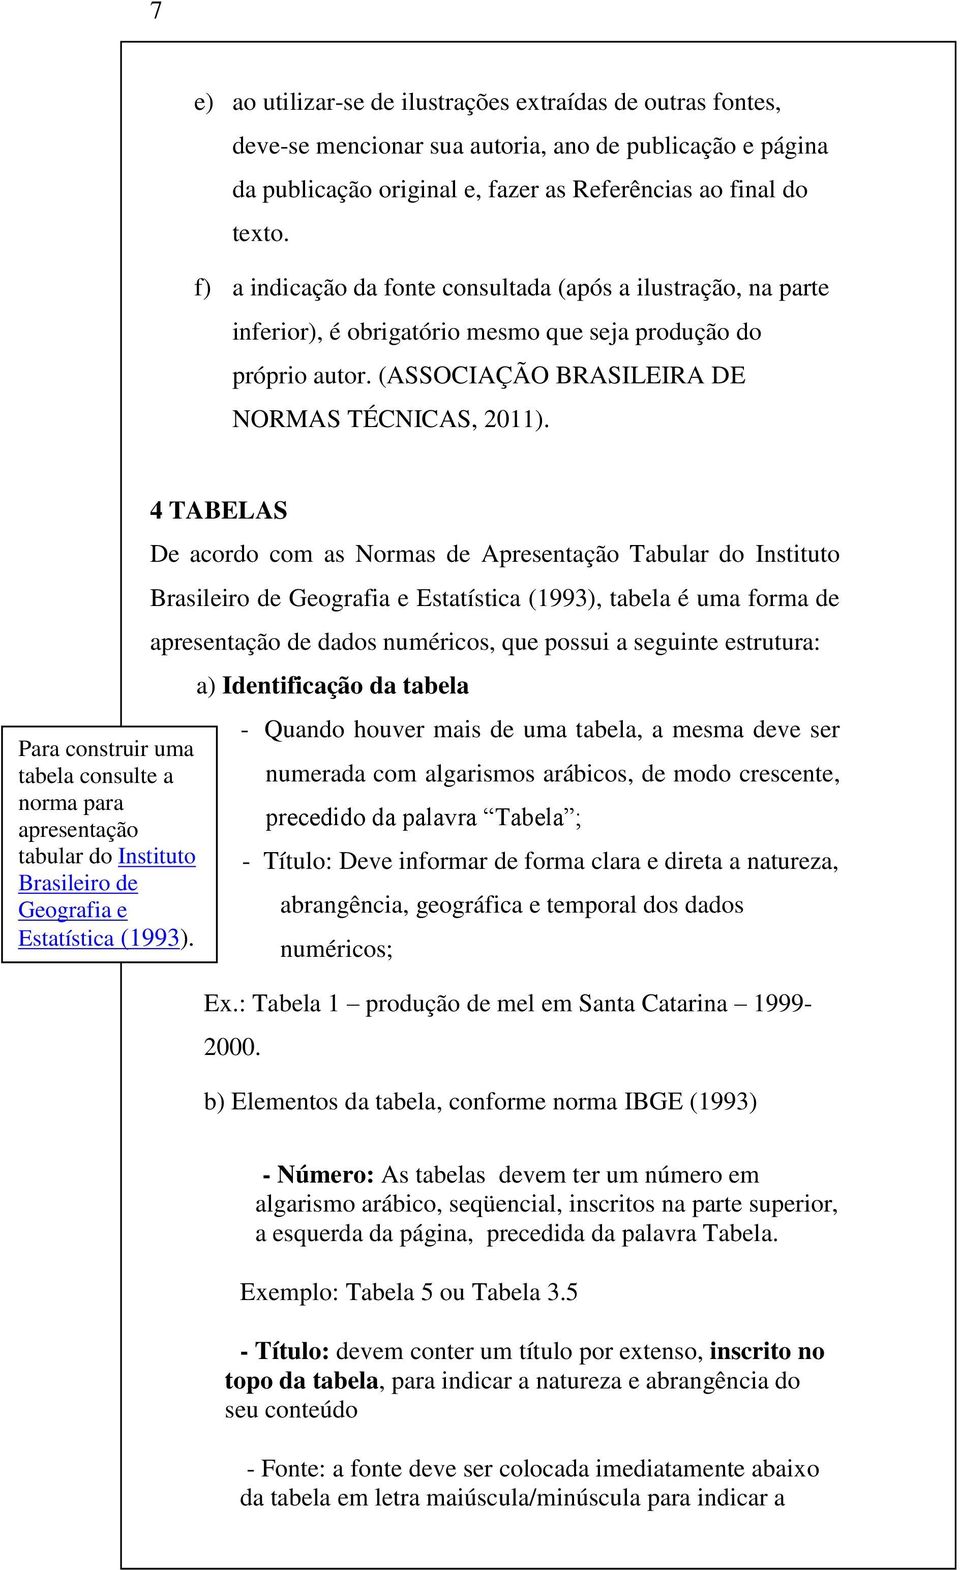 Para construir uma tabela consulte a norma para apresentação tabular do Instituto Brasileiro de Geografia e Estatística (1993).